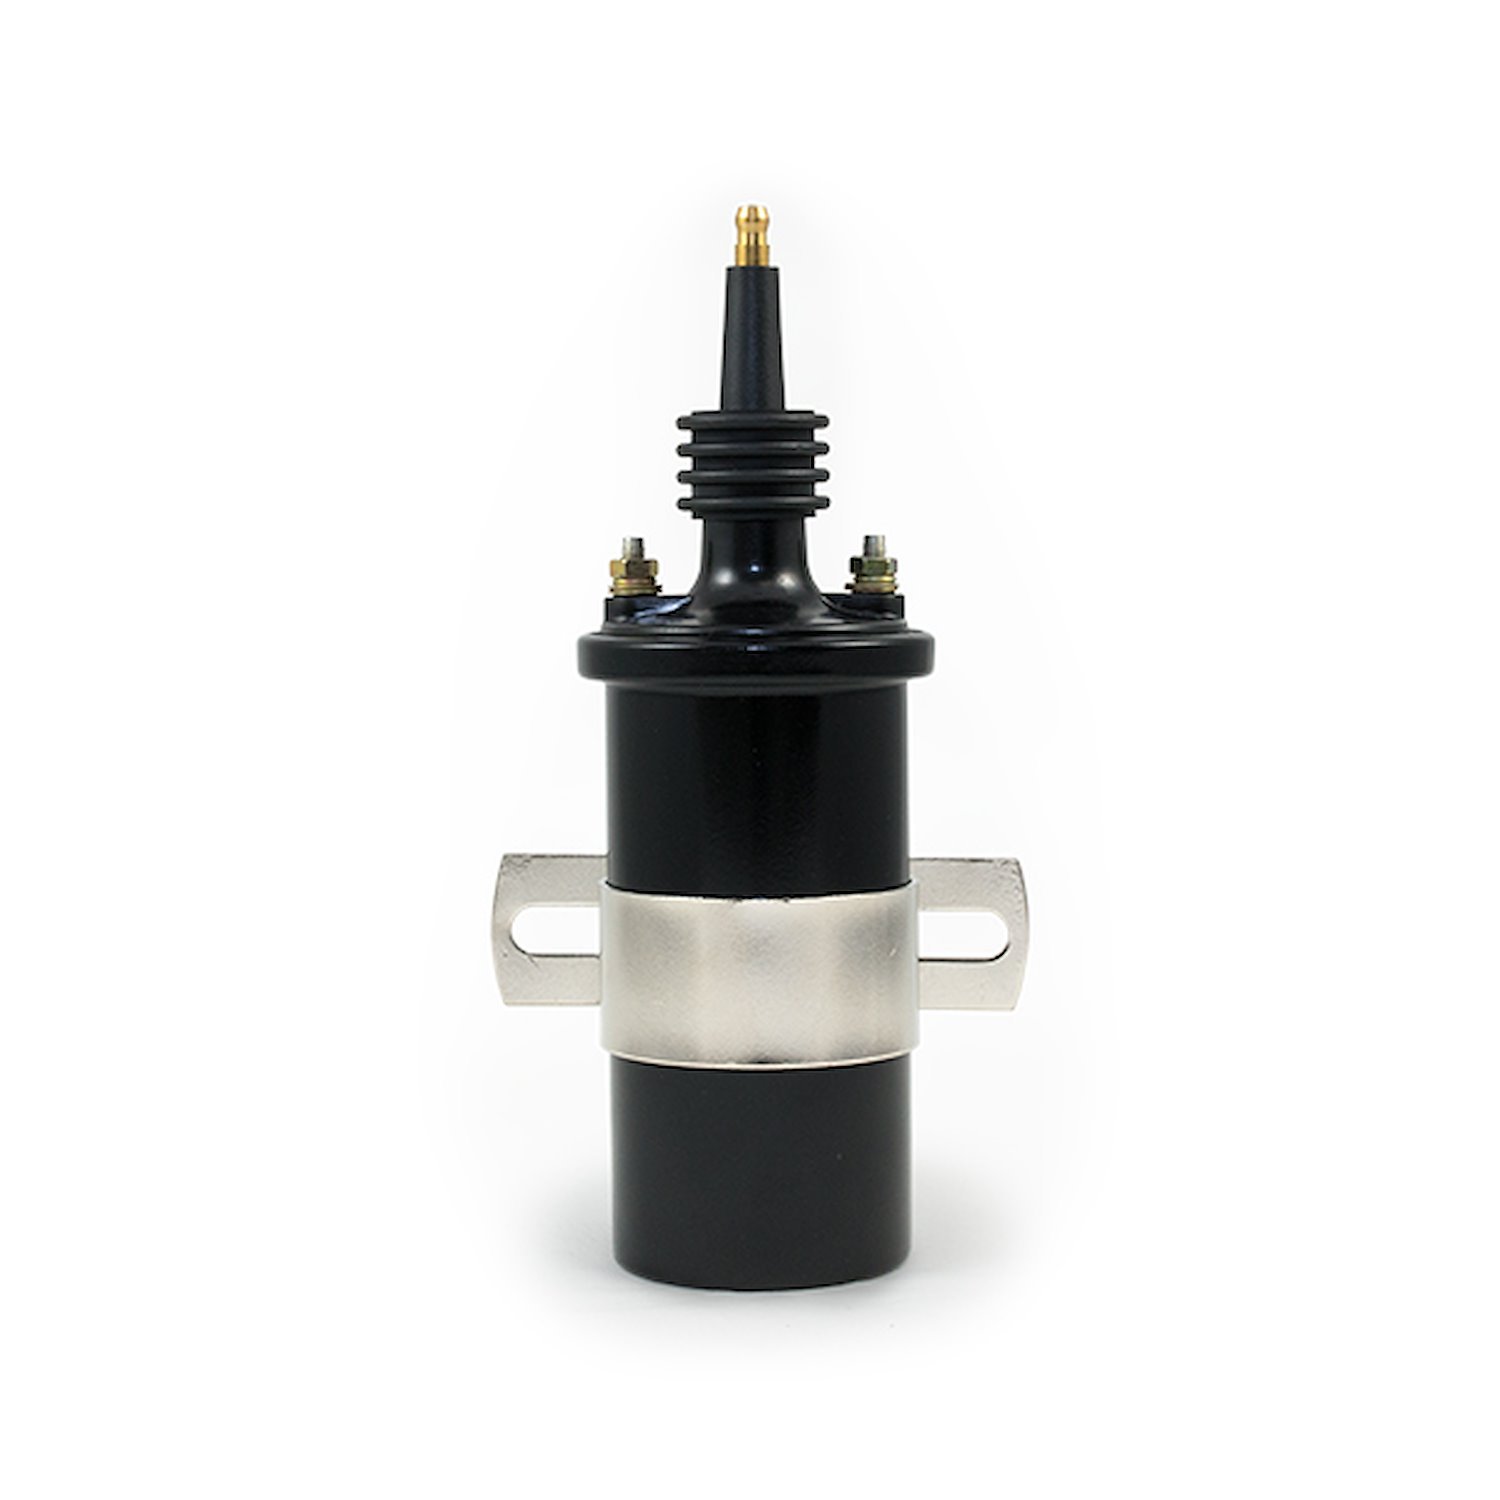 JM6928BK Ignition Coil, Oil-Filled Canister Style, Male Socket, Black